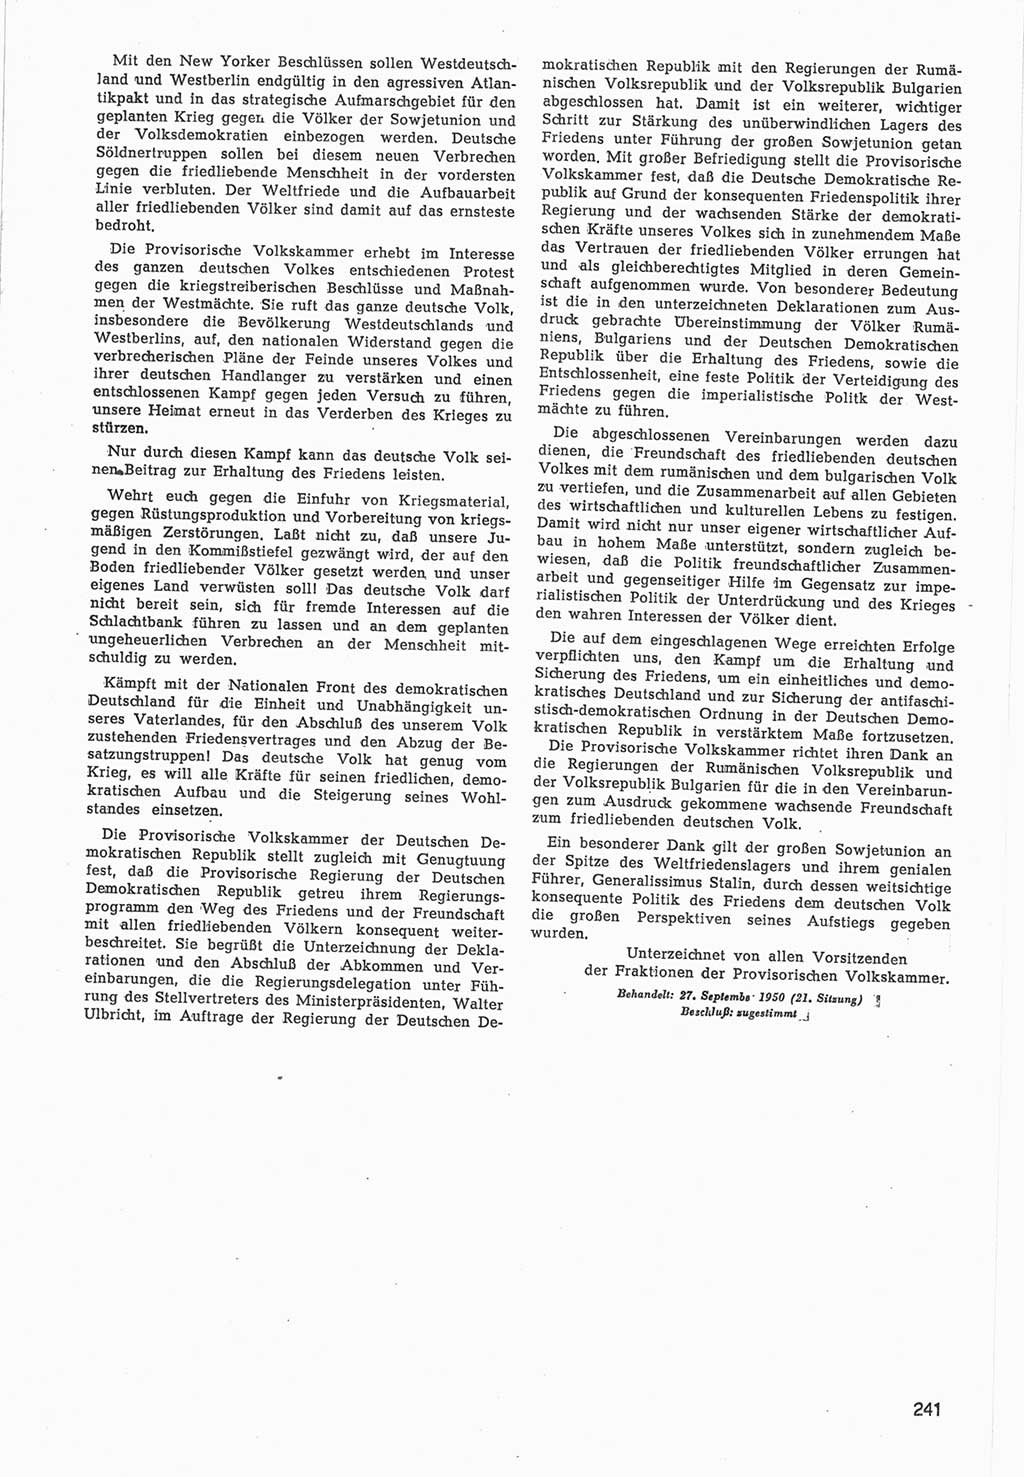 Provisorische Volkskammer (VK) der Deutschen Demokratischen Republik (DDR) 1949-1950, Dokument 843 (Prov. VK DDR 1949-1950, Dok. 843)